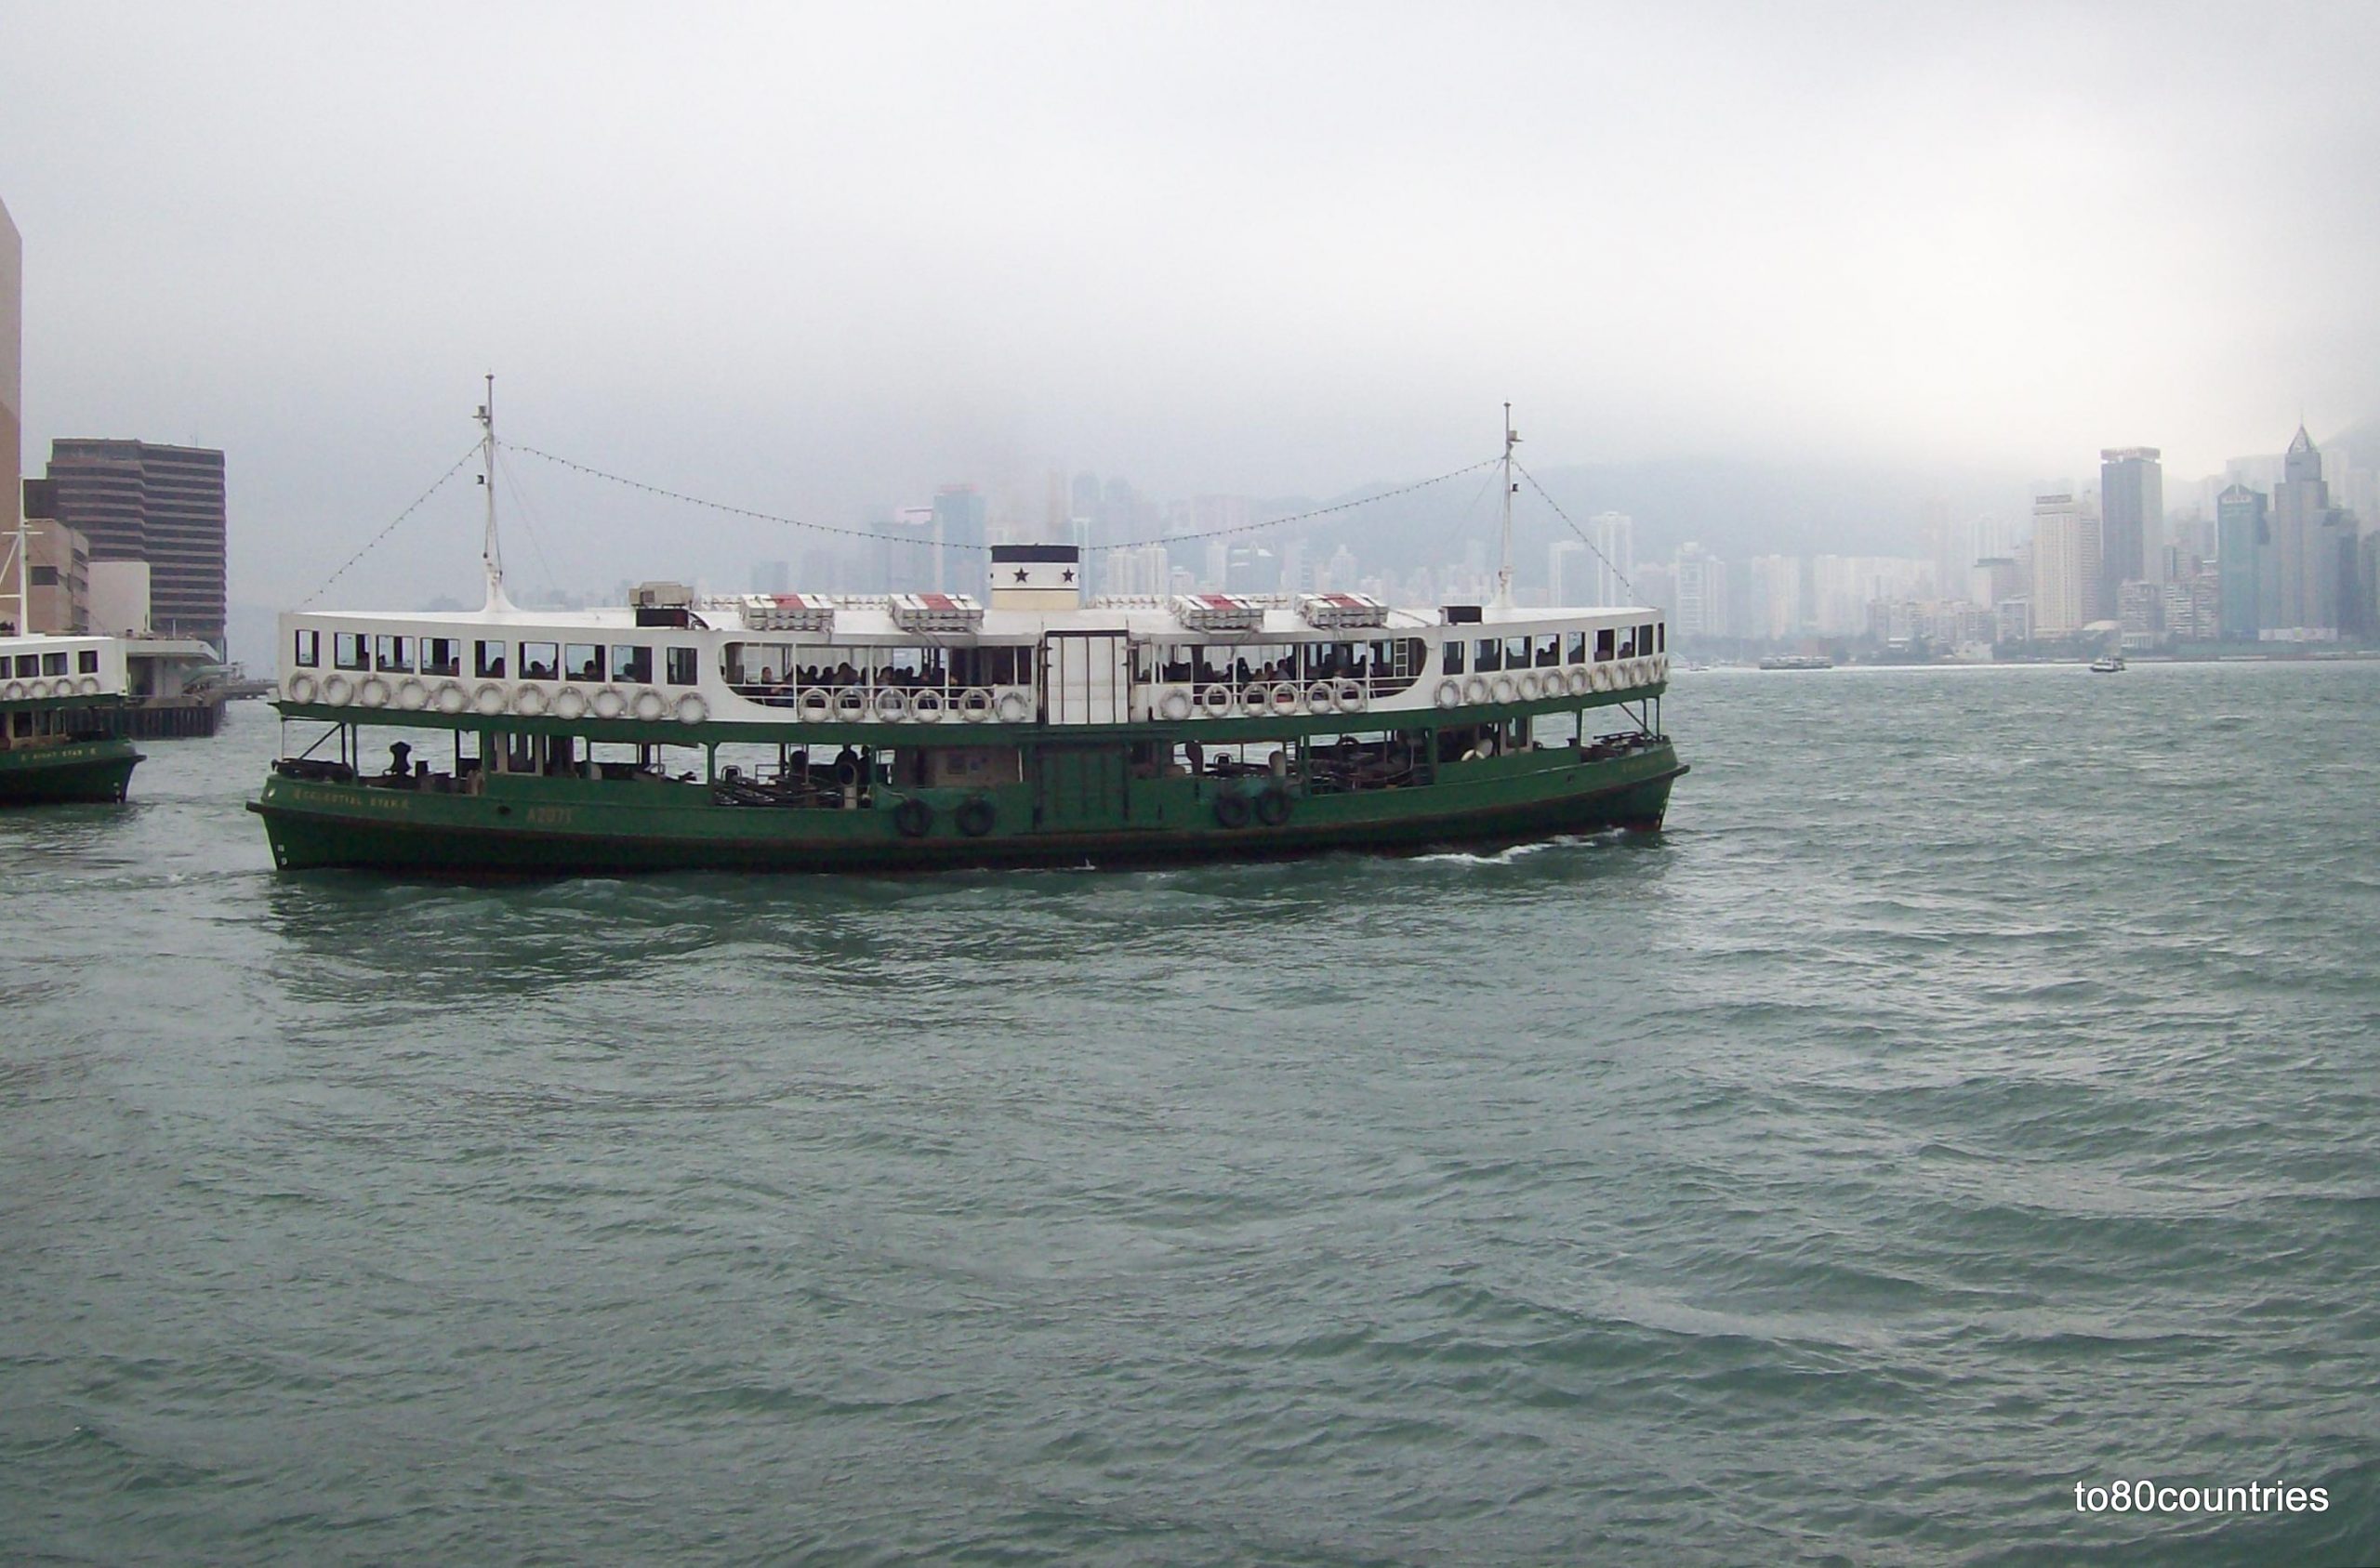 Star Ferry Hongkong